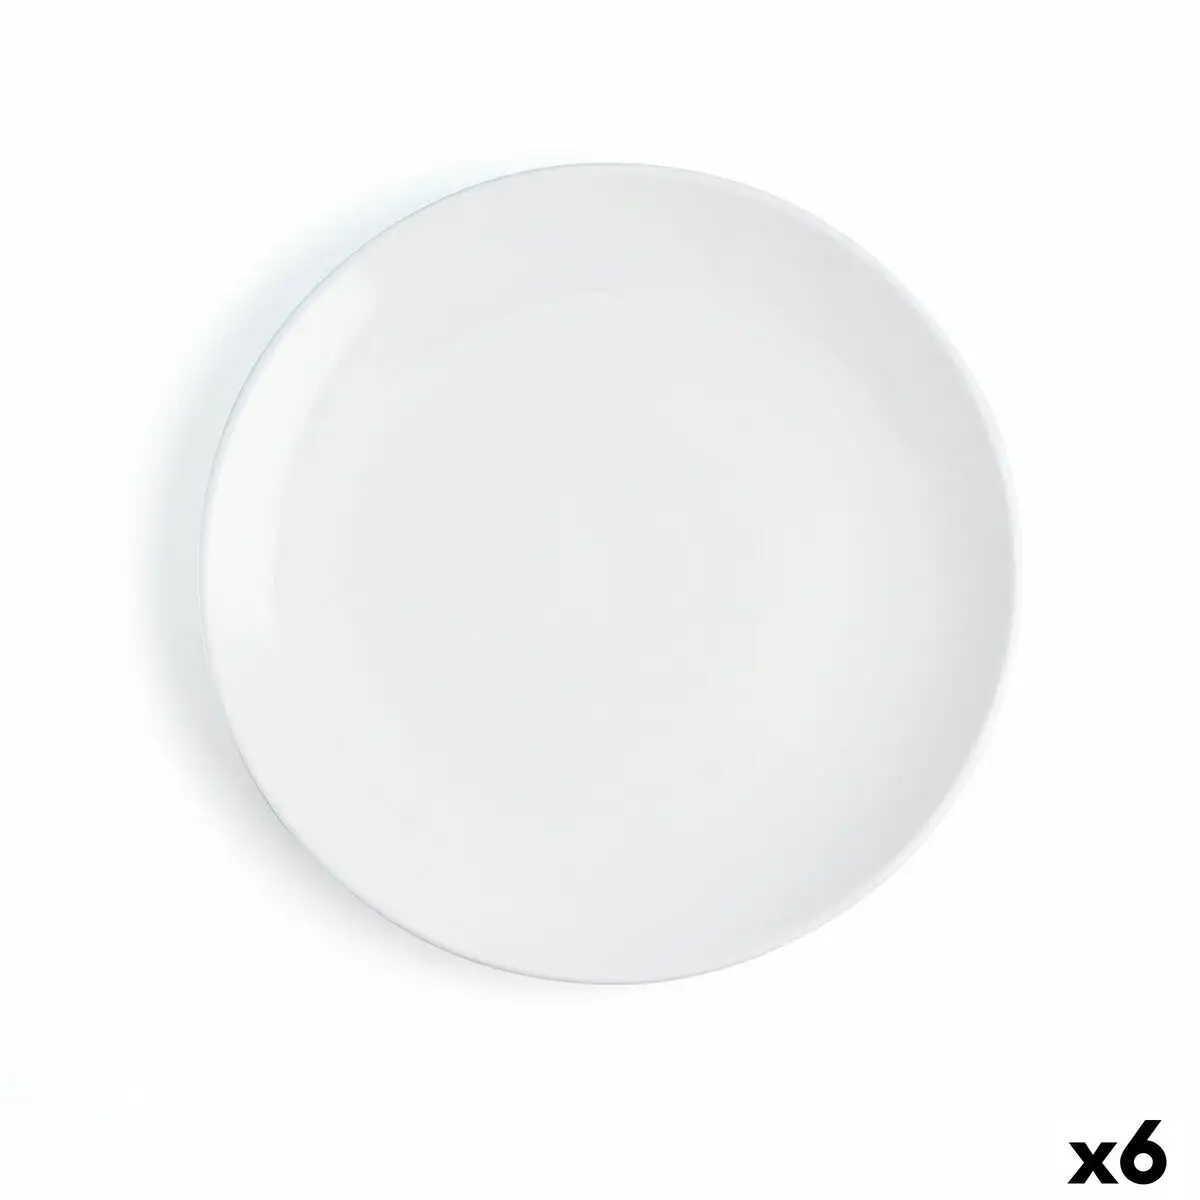 Assiette plate ariane vital coupe ceramique blanc o 31 cm 6 unites _8702. DIAYTAR SENEGAL - L'Art de Vivre avec Authenticité. Explorez notre gamme de produits artisanaux et découvrez des articles qui apportent une touche unique à votre vie.